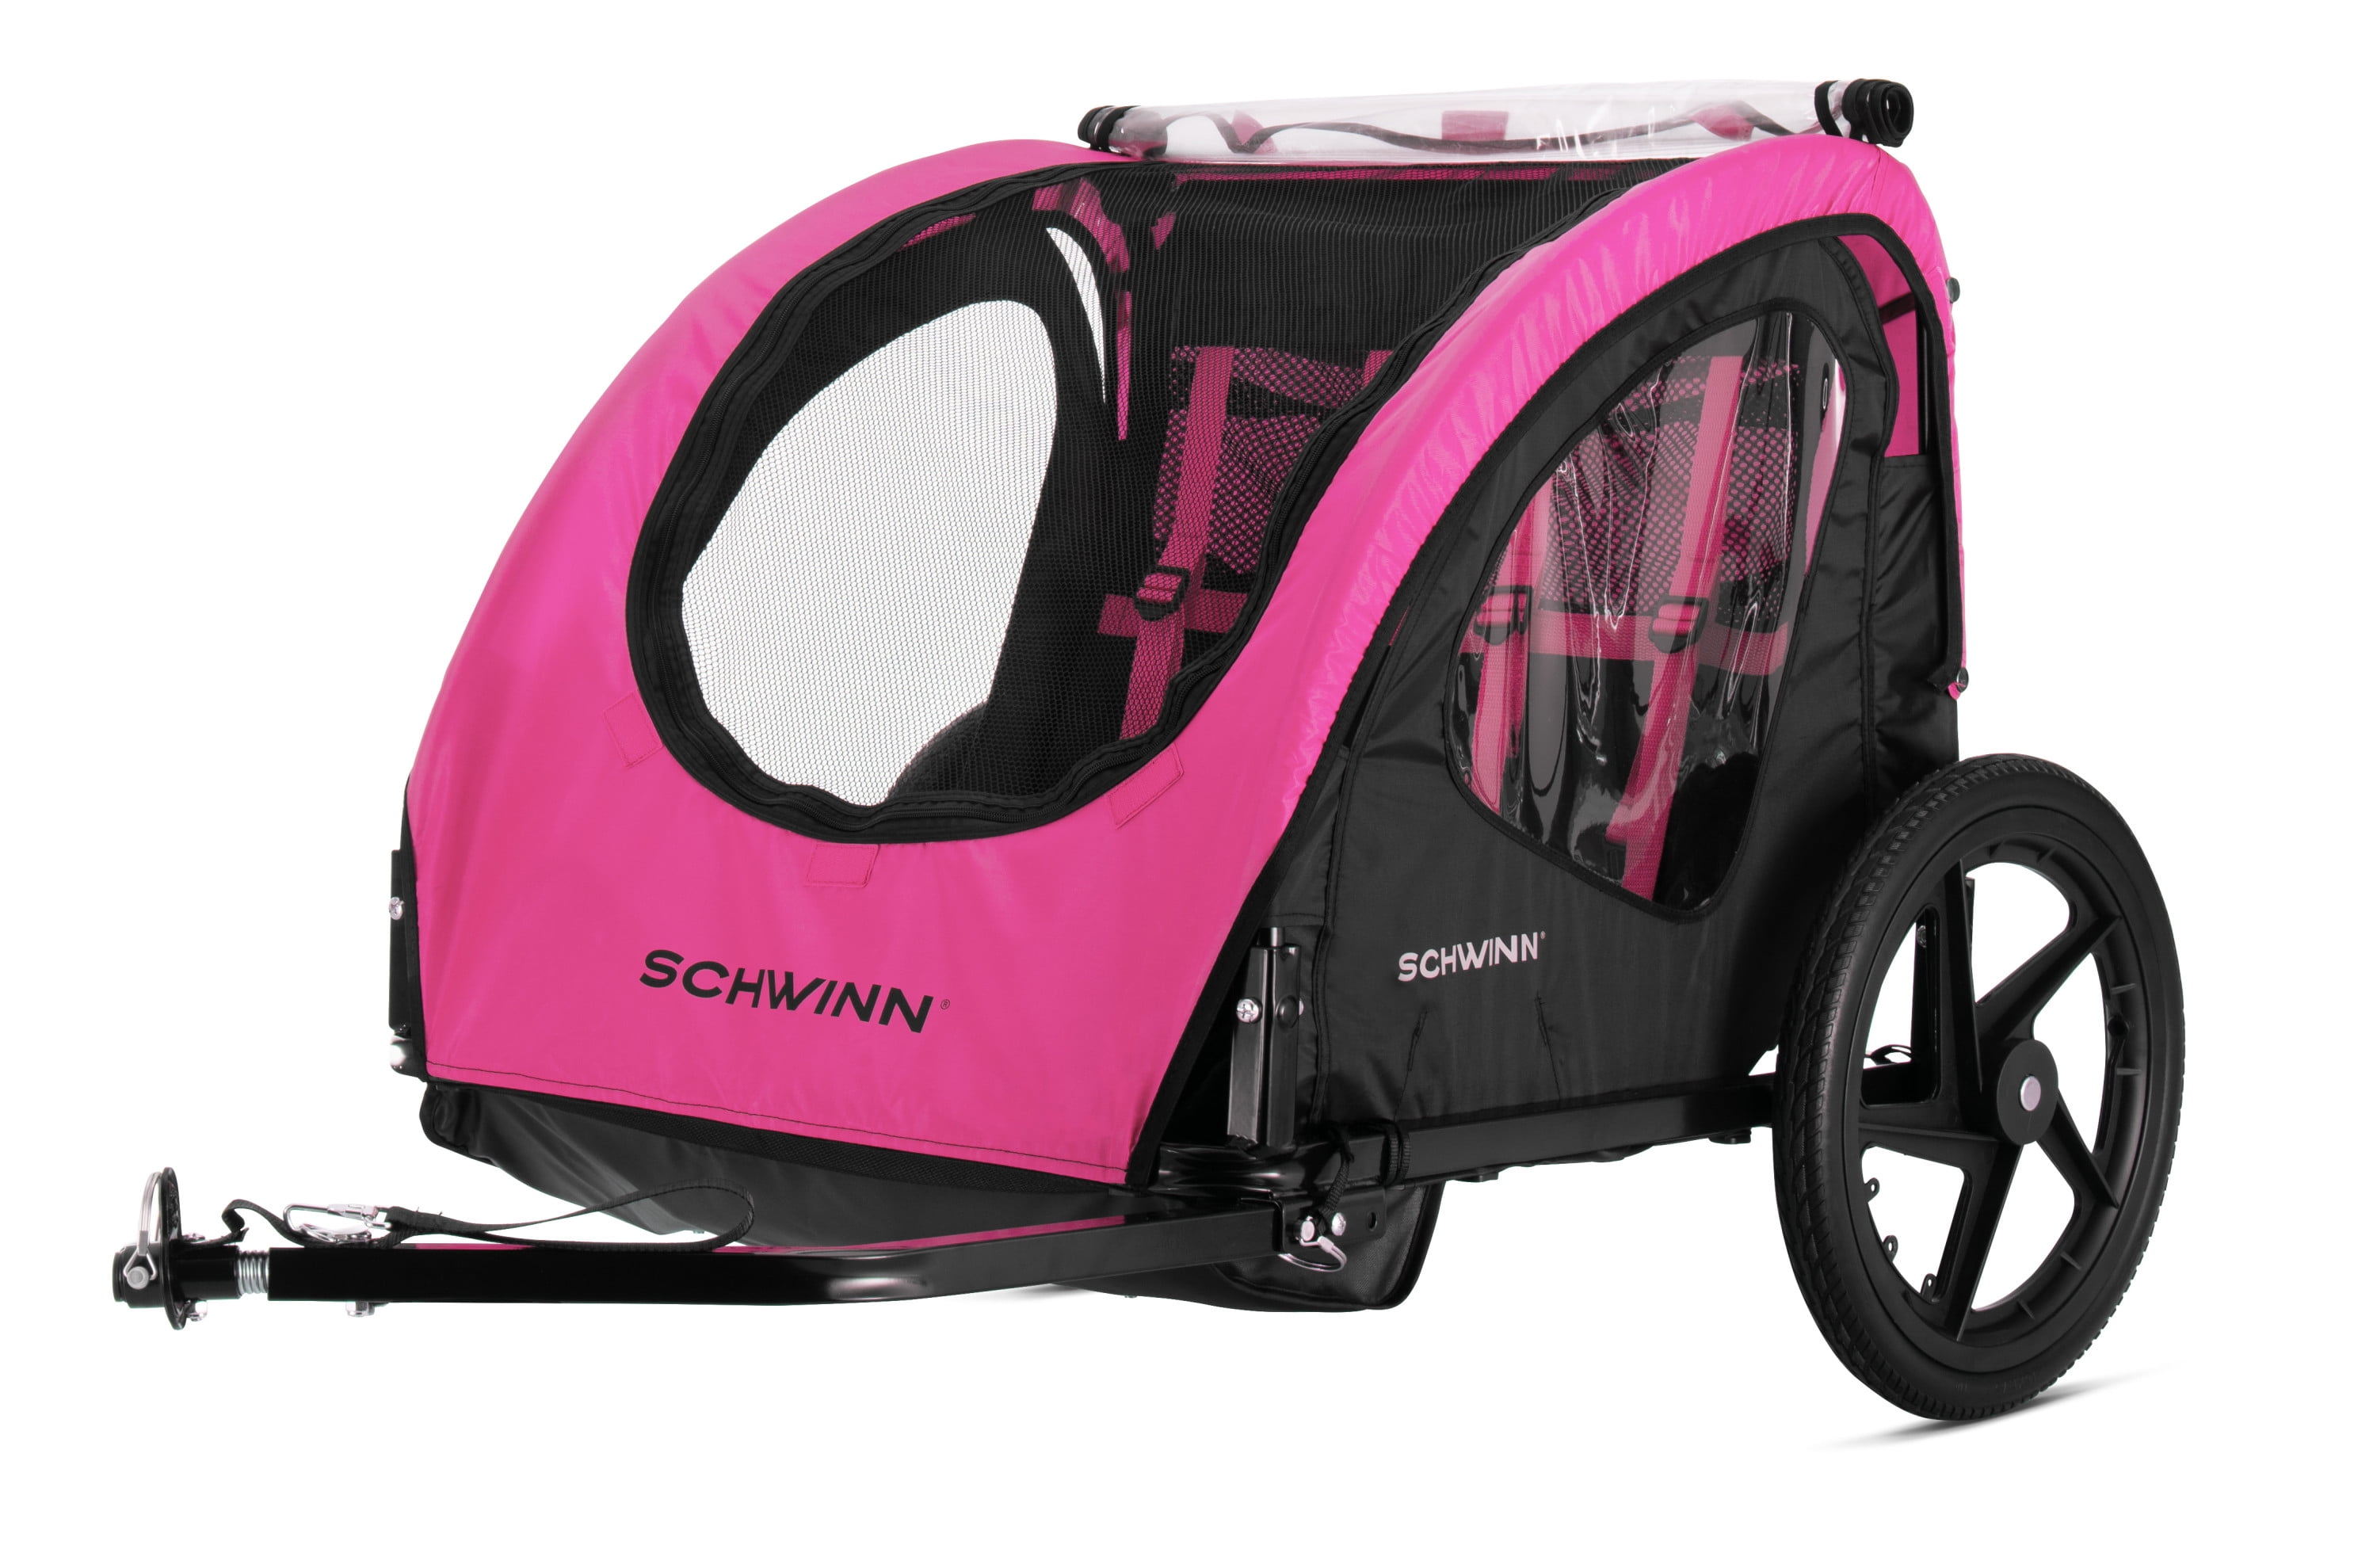 Schwinn Shuttle foldable bike trailer 